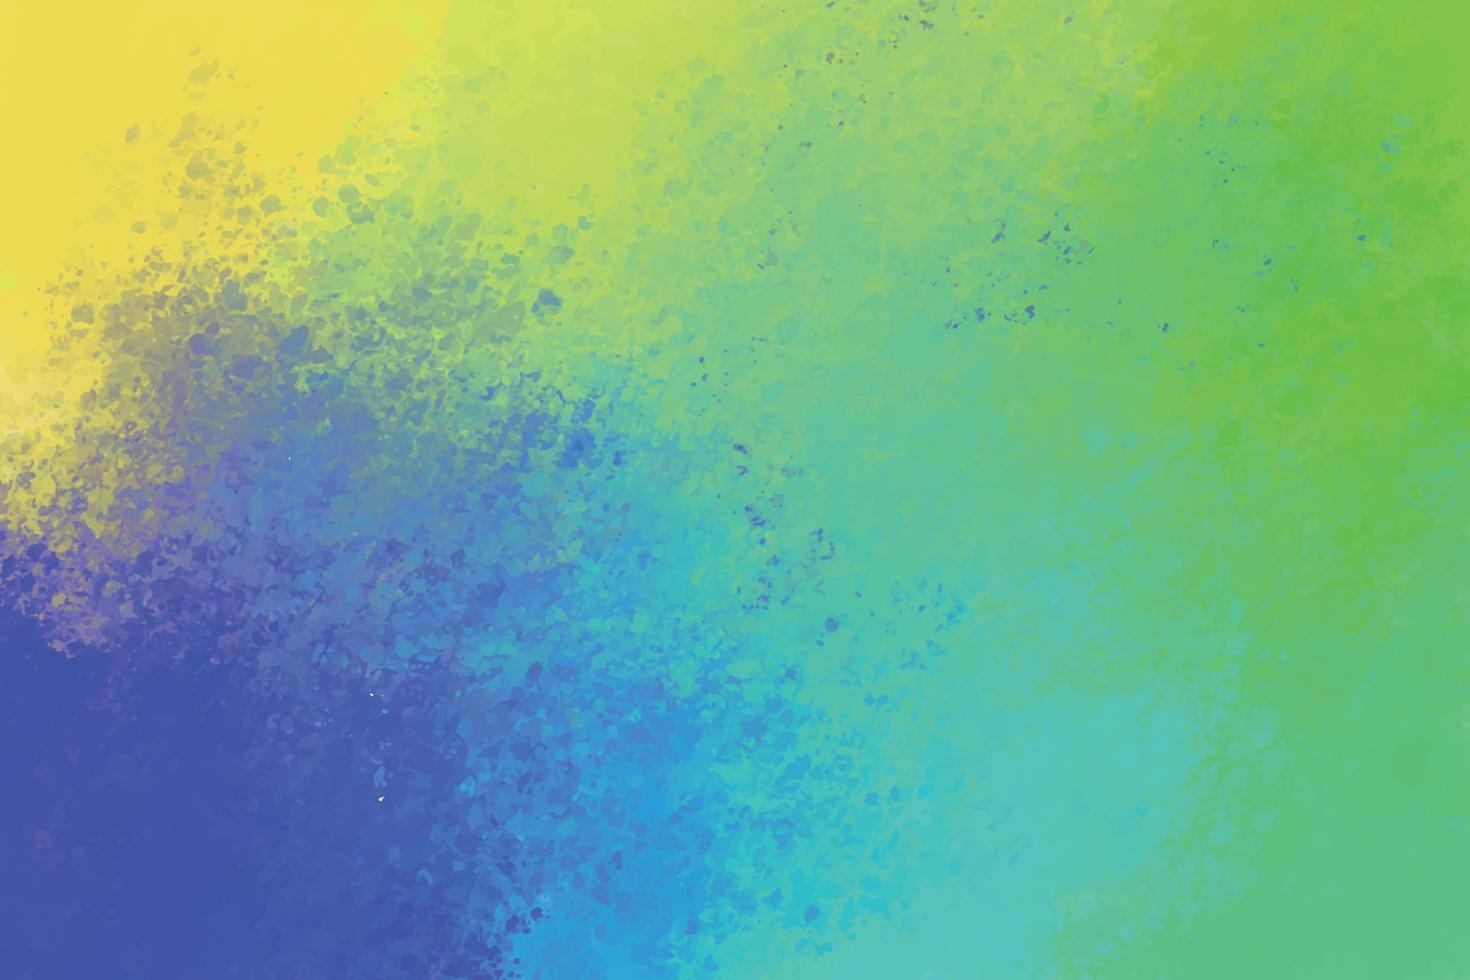 vattenfärg pastell bakgrund hand målad. akvarell färgrik fläckar på papper vektor